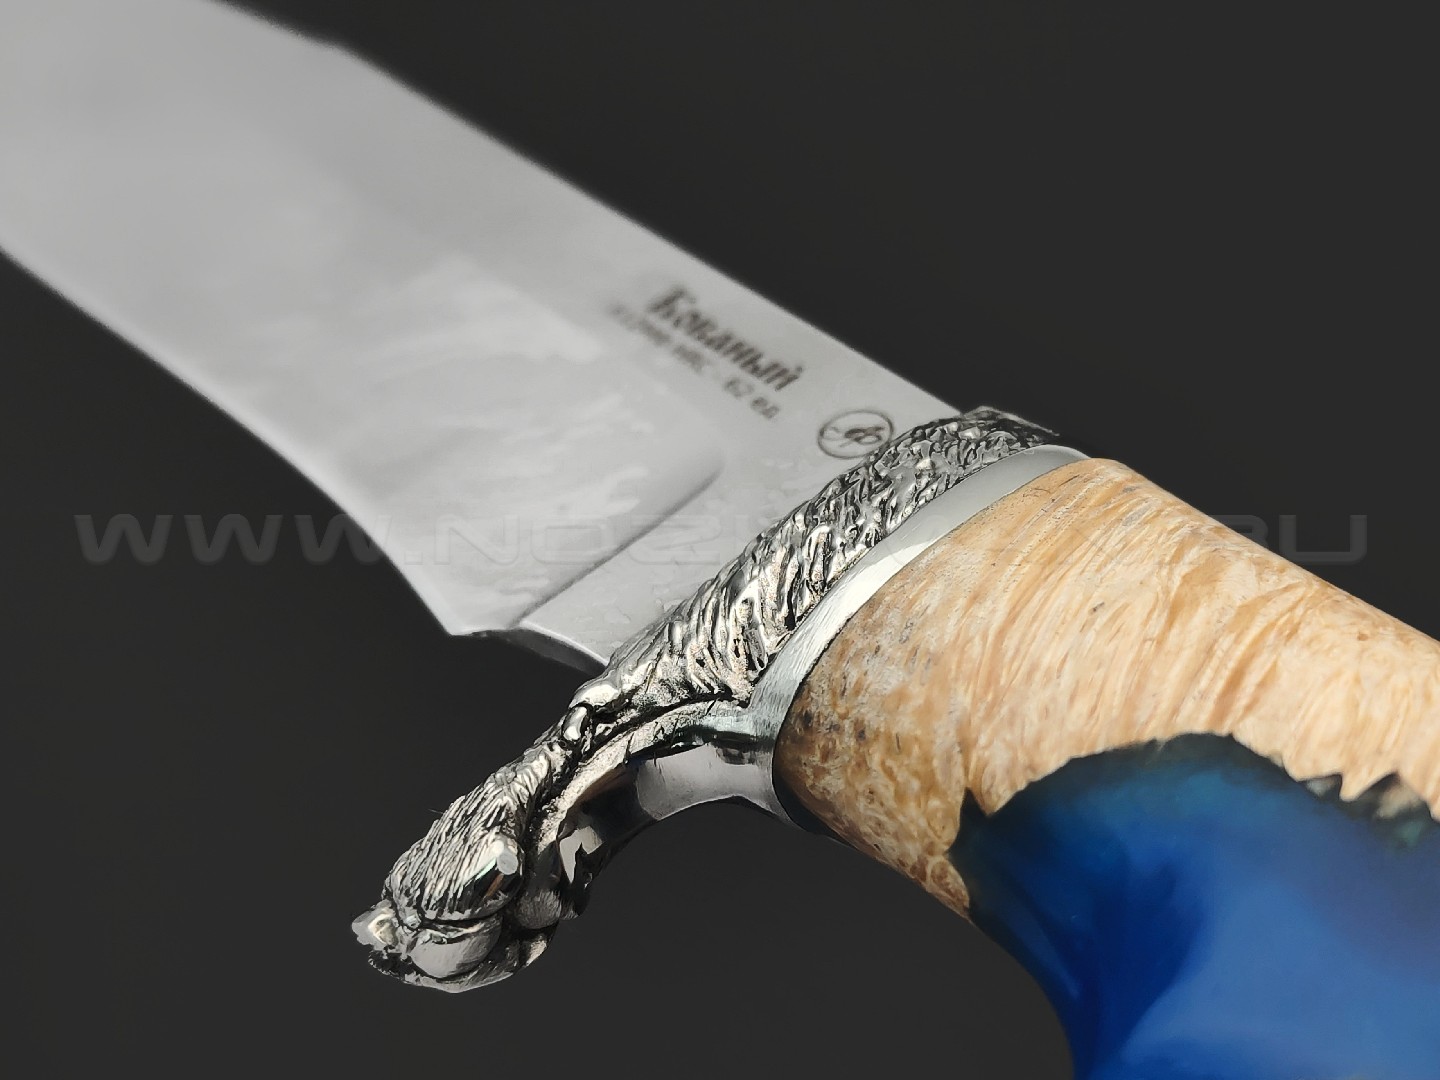 Фурсач А. А. нож Газель-2 сталь Х12МФ травление, рукоять Гибрид дерева и акрила, мельхиор